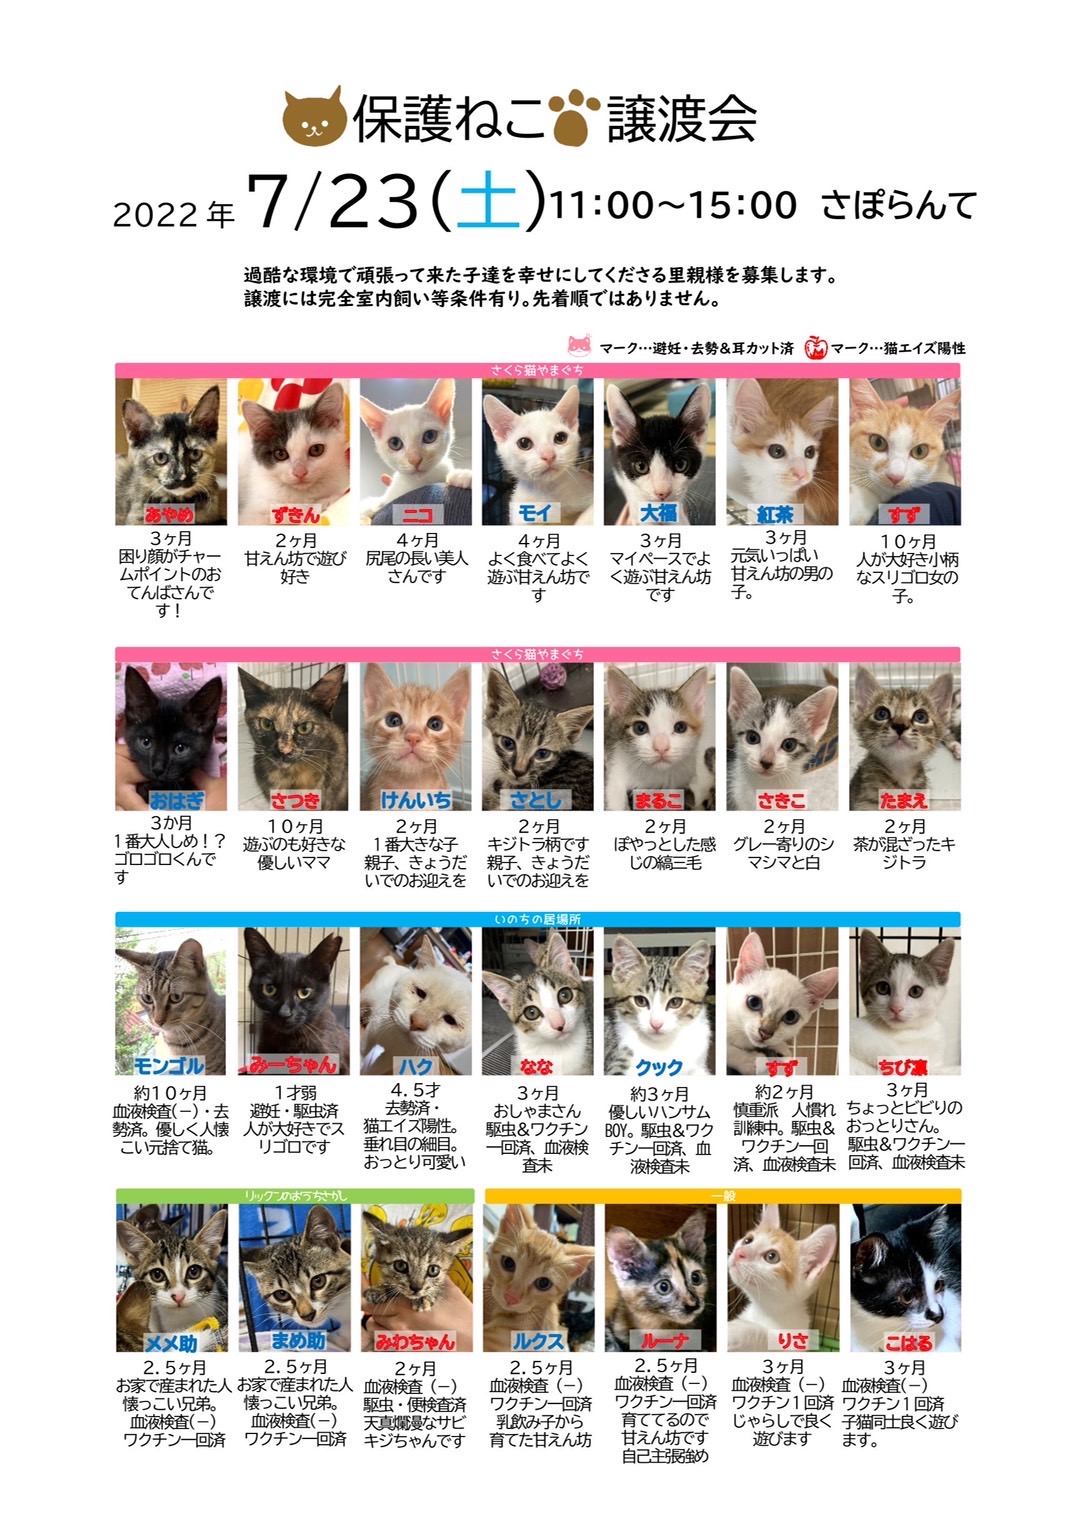 「保護ねこ譲渡会(7/23)」のお知らせ(情報提供）